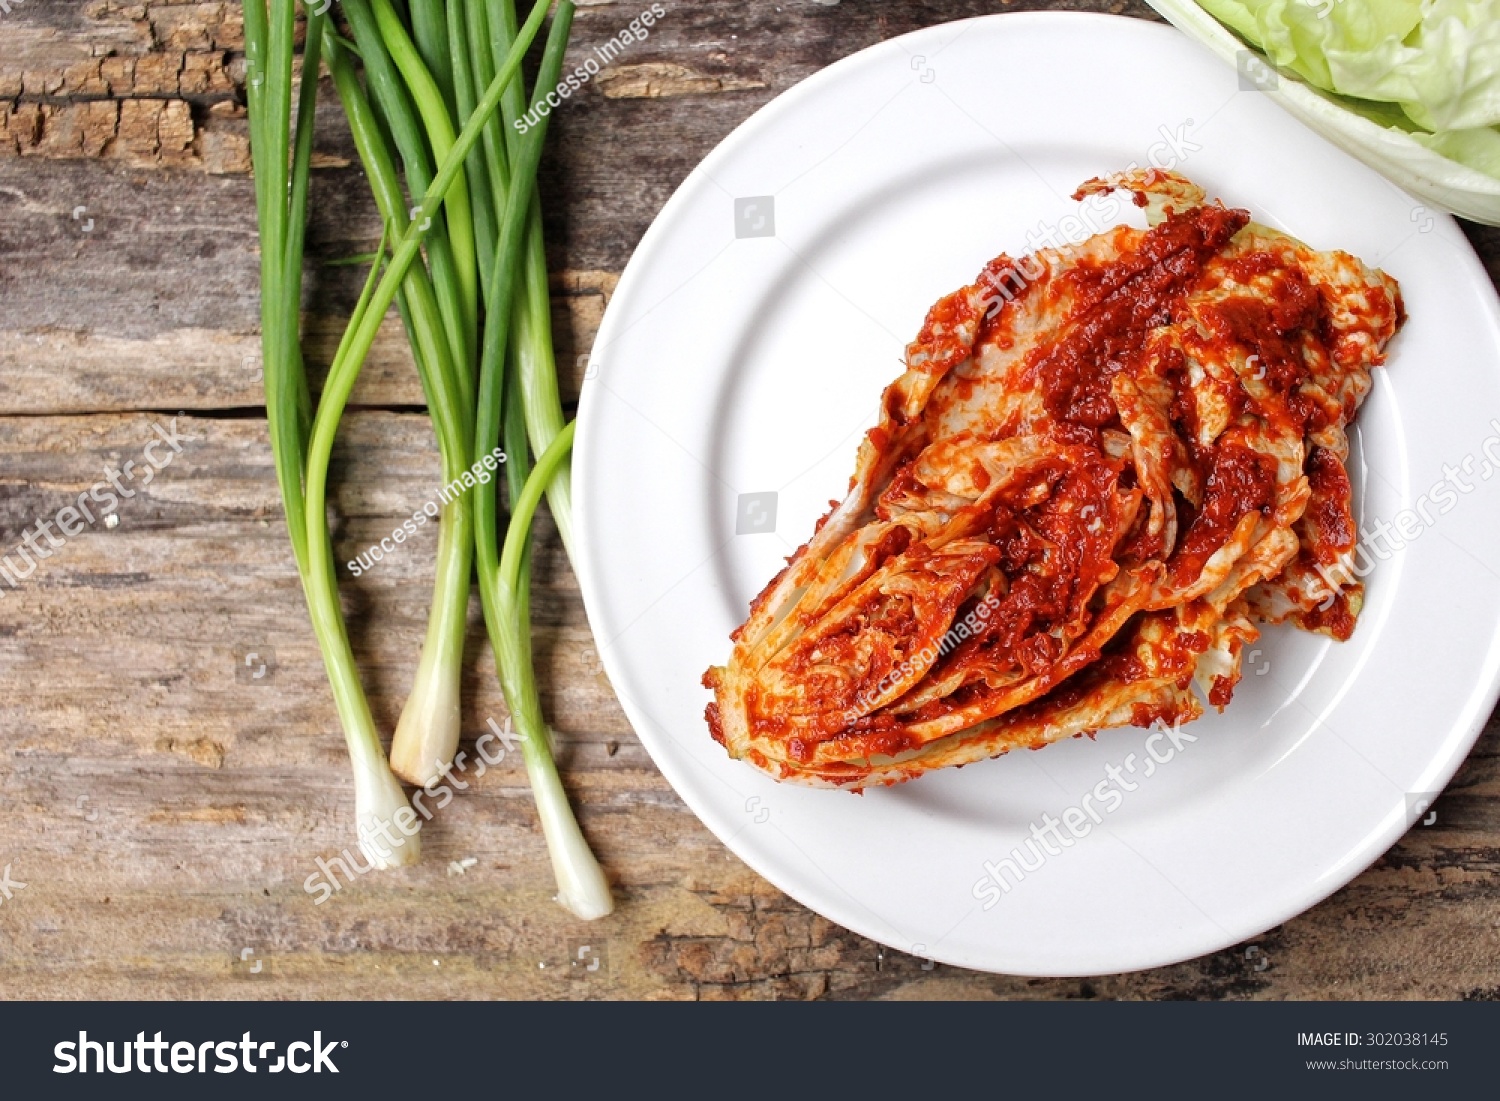 Kimchi Korean Food Stock Photo 302038145 : Shutterstock